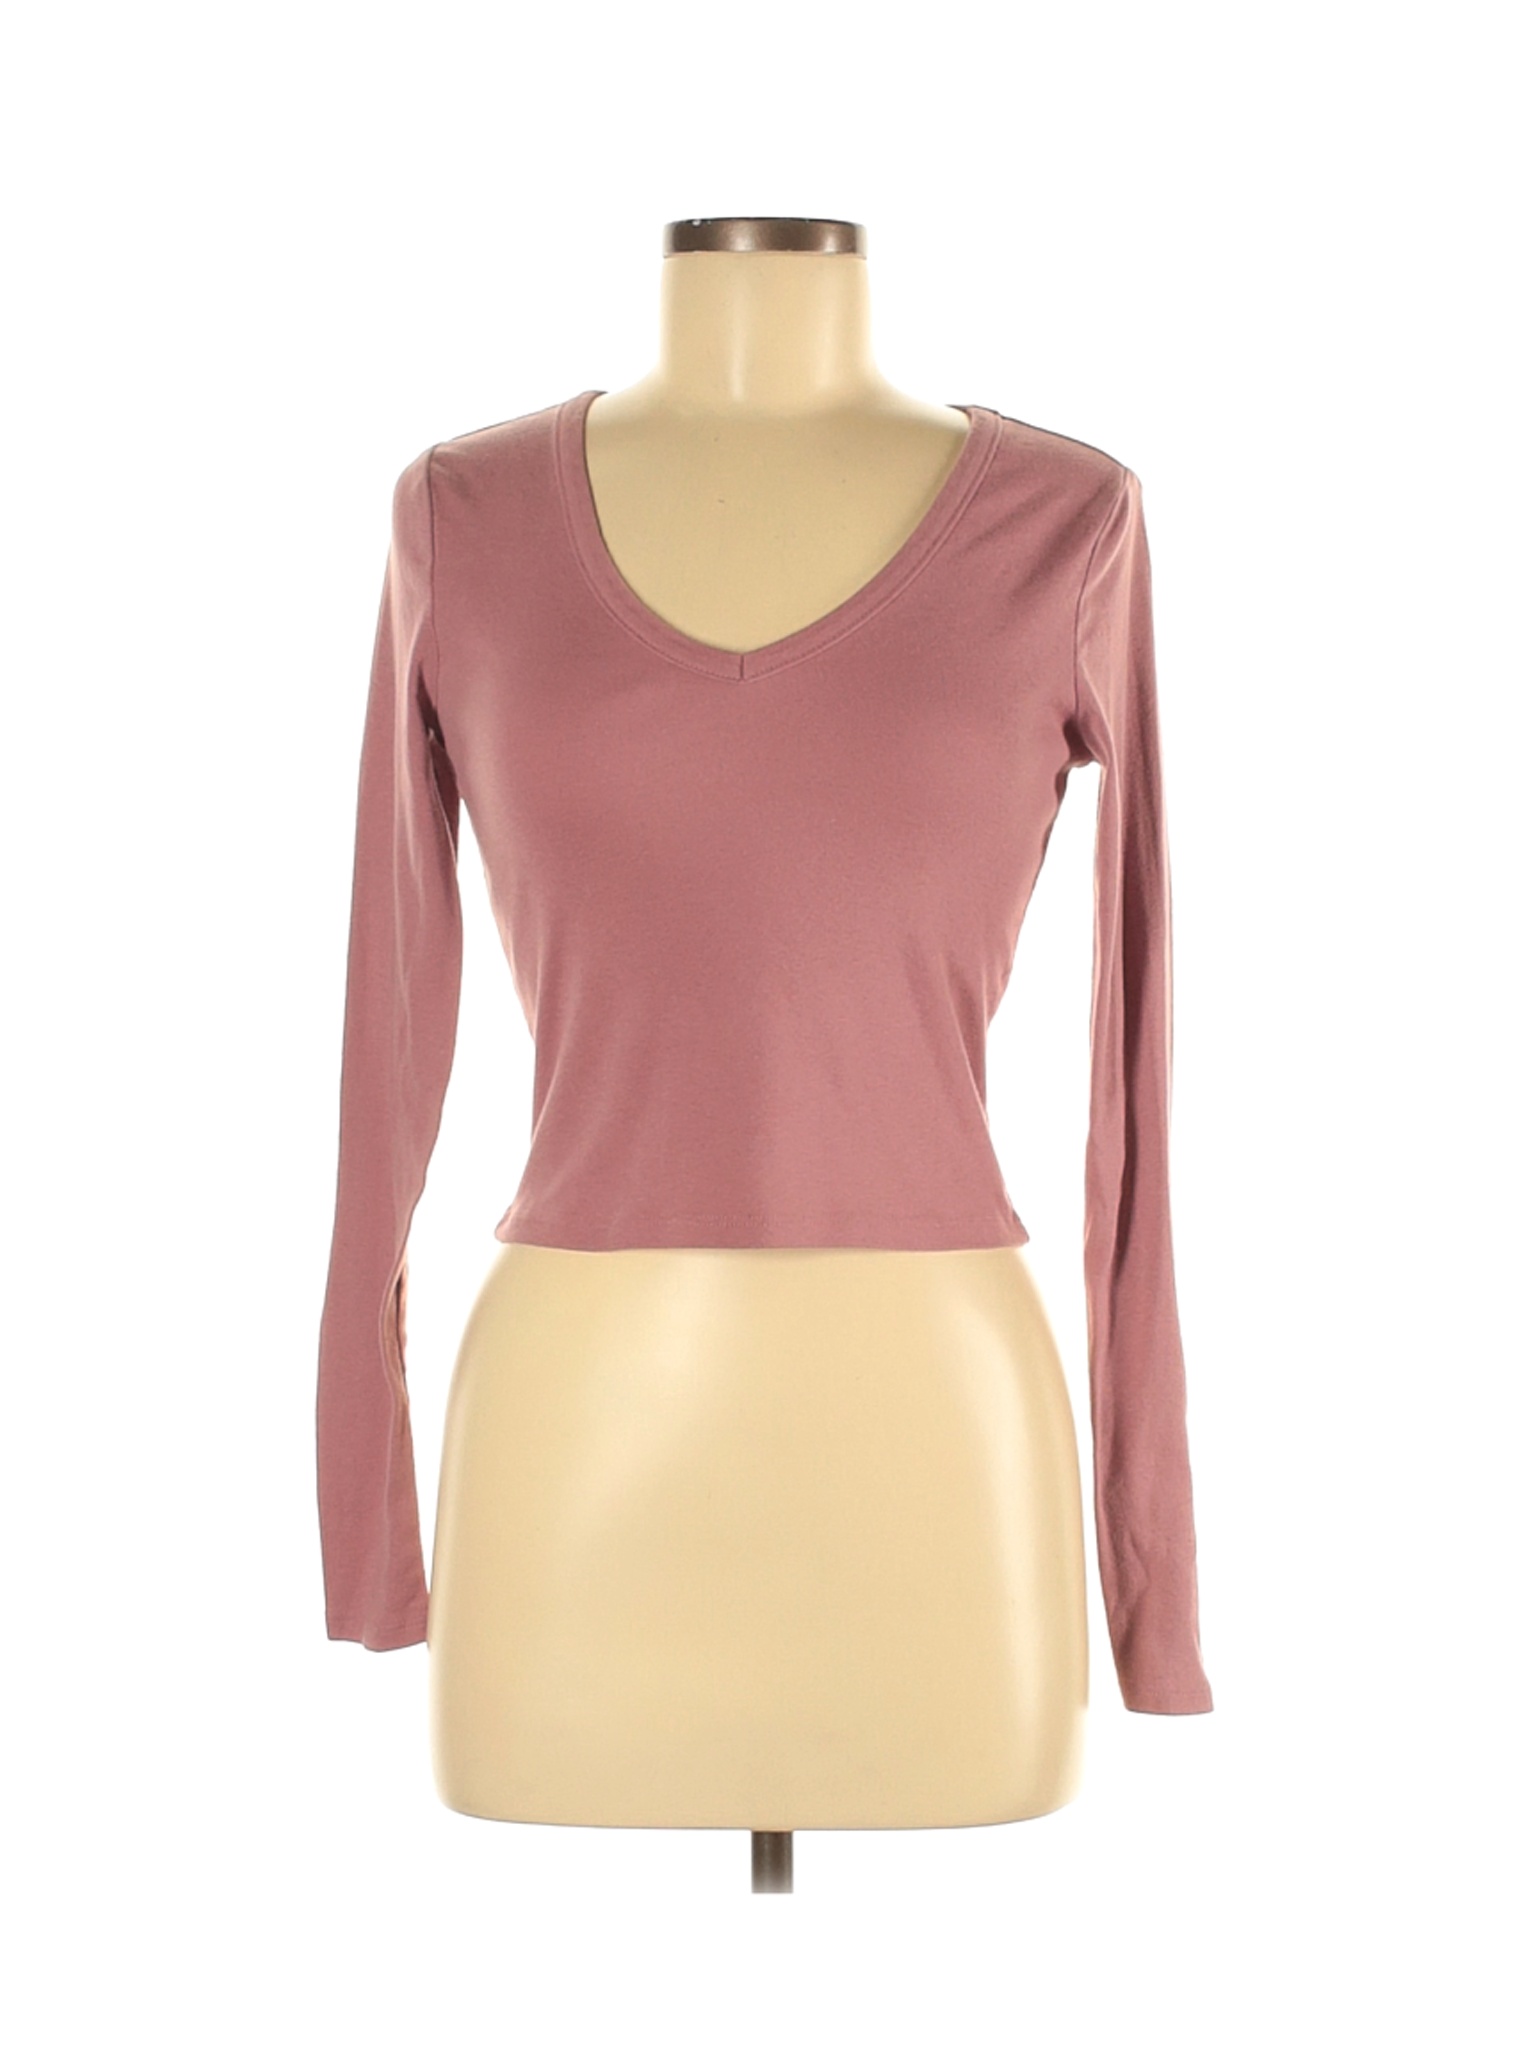 PacSun Women Pink Long Sleeve T-Shirt M | eBay